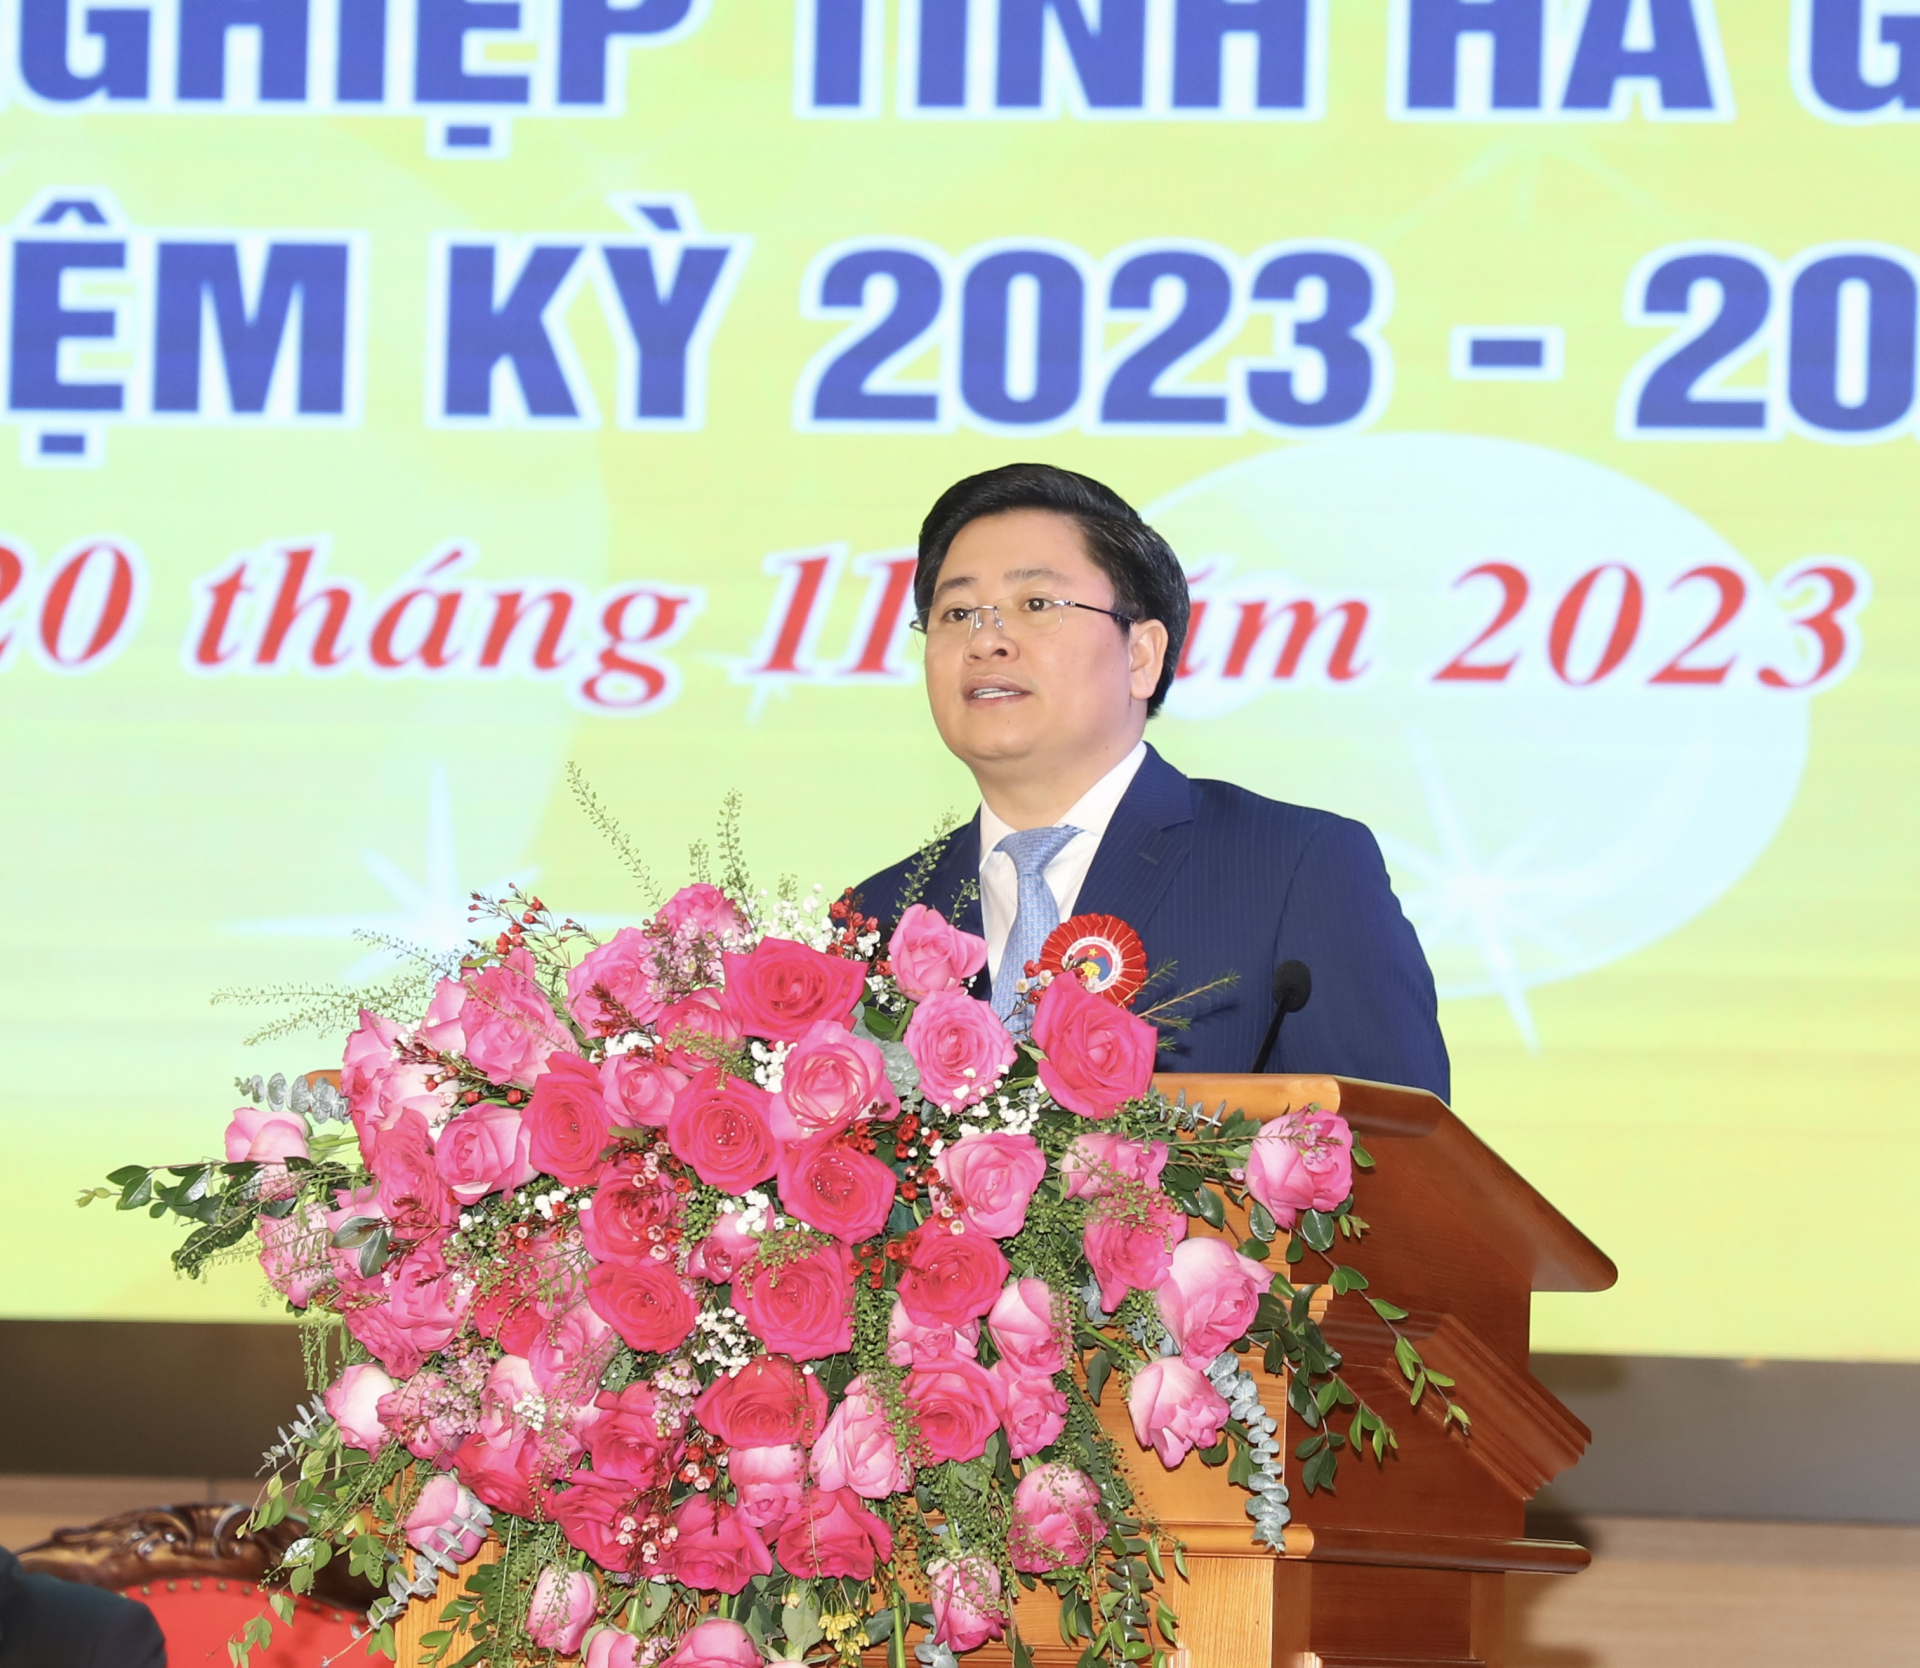 Ông Nguyễn Kim Hùng, Phó Chủ tịch Hiệp hội Doanh nghiệp nhỏ và vừa Việt Nam phát biểu tại đại hội